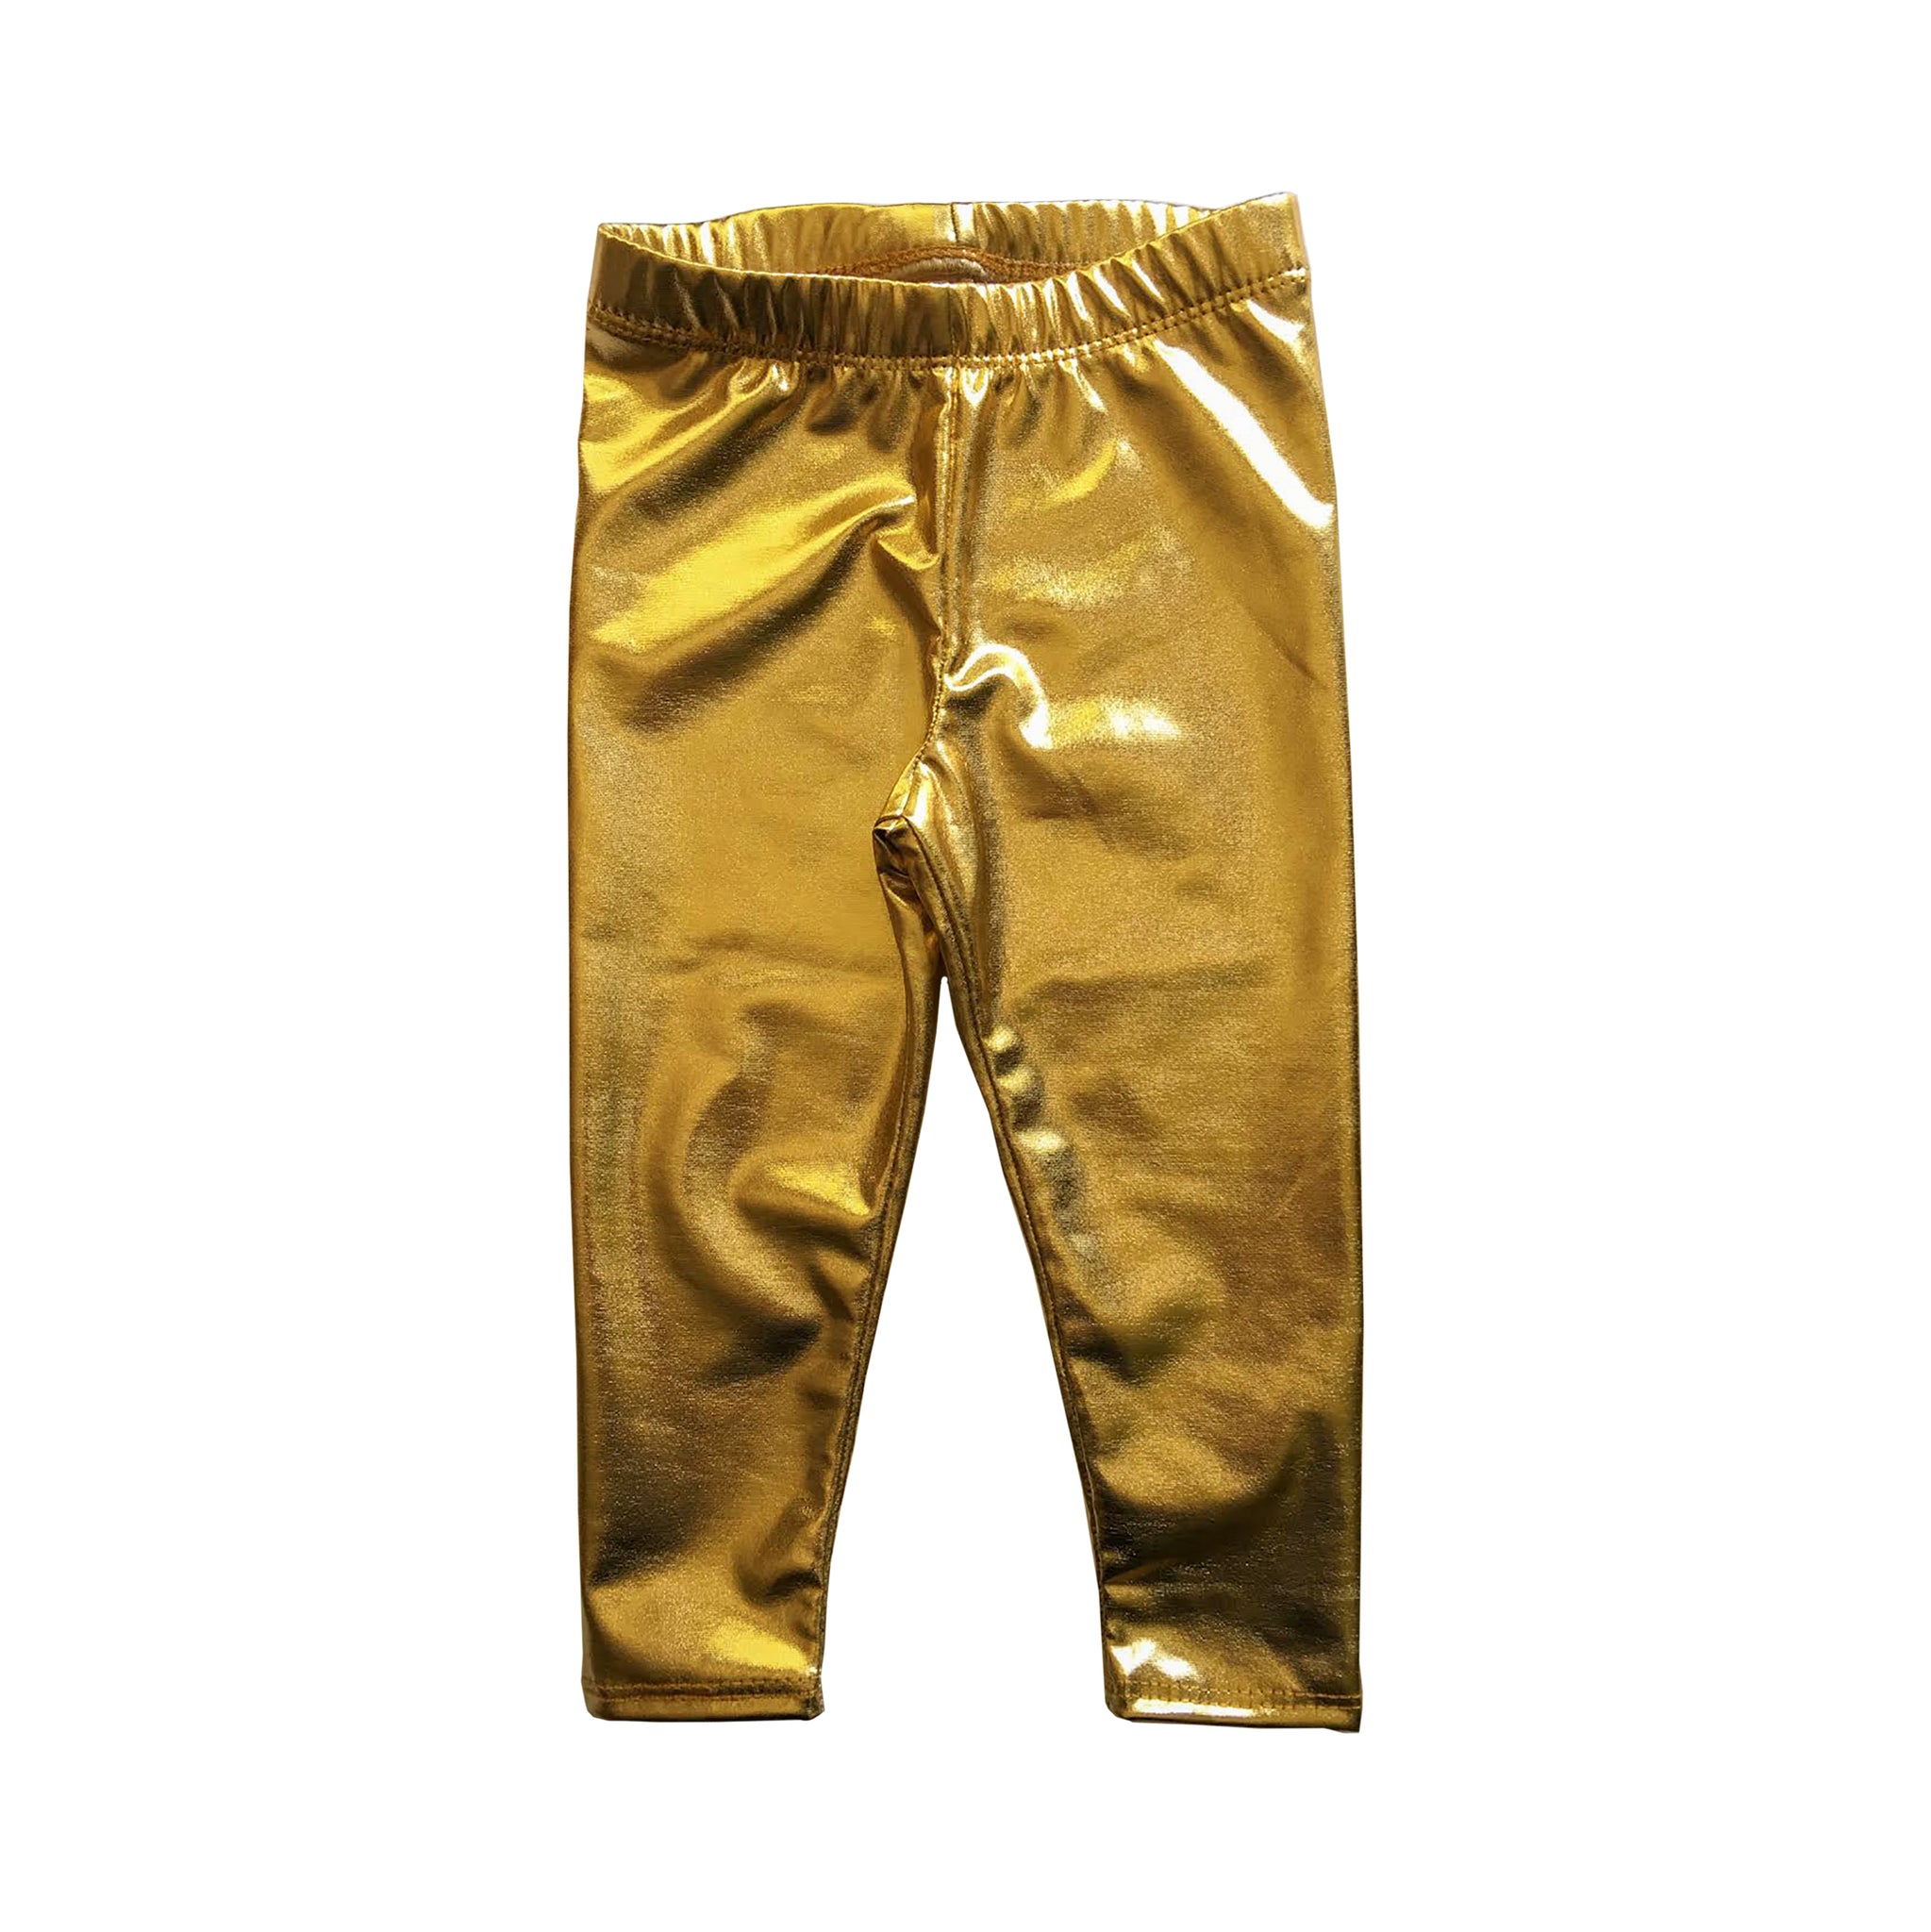 Girls Gold Foil Lame Metallic Leggings, Sizes 12m-8Y